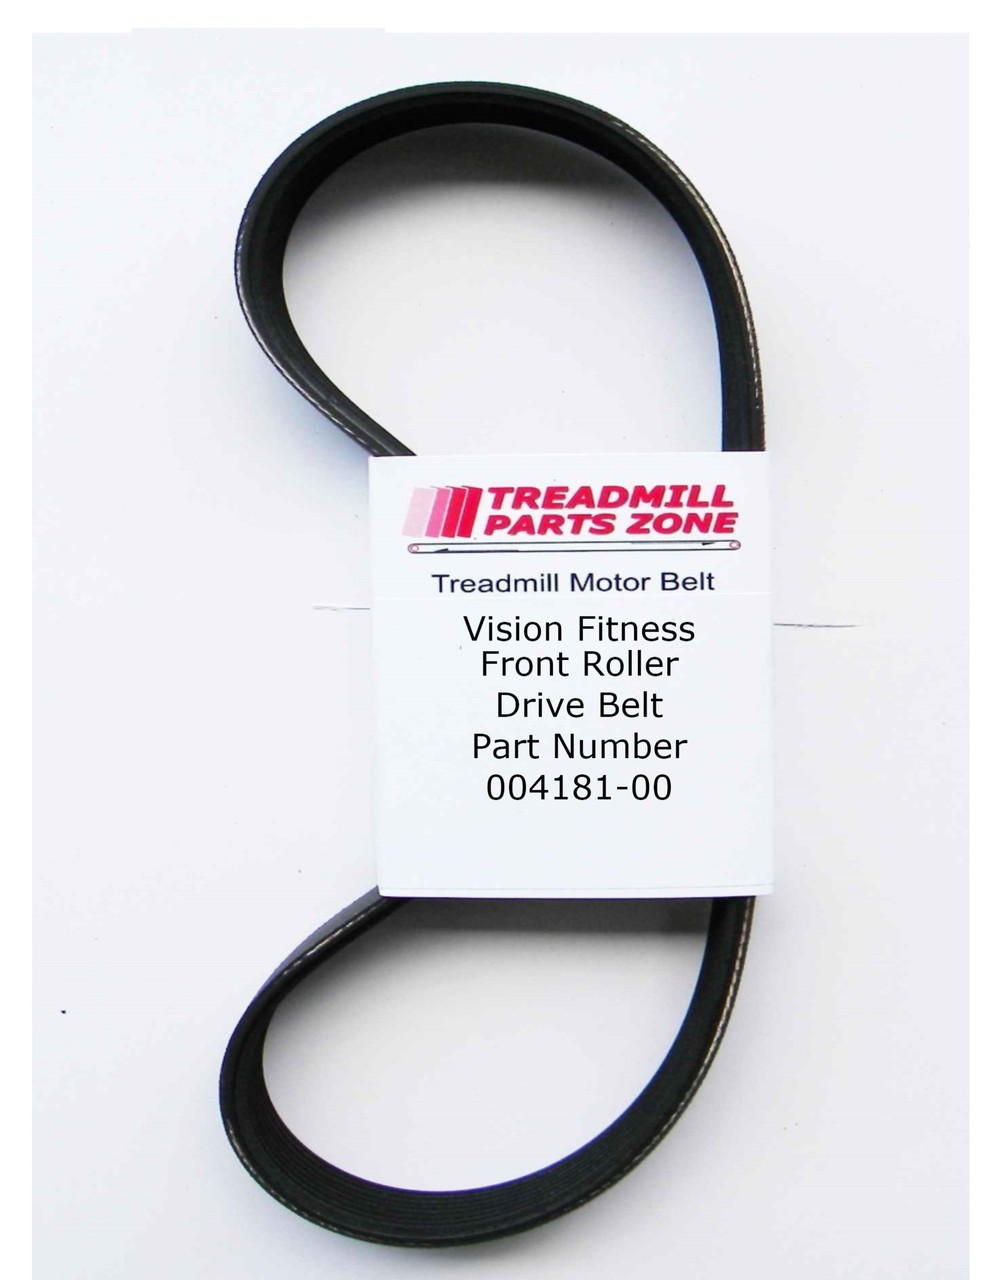 Vision Treadmill Model TM241 T9500 Front Roller Drive Belt Part Number 004181-00